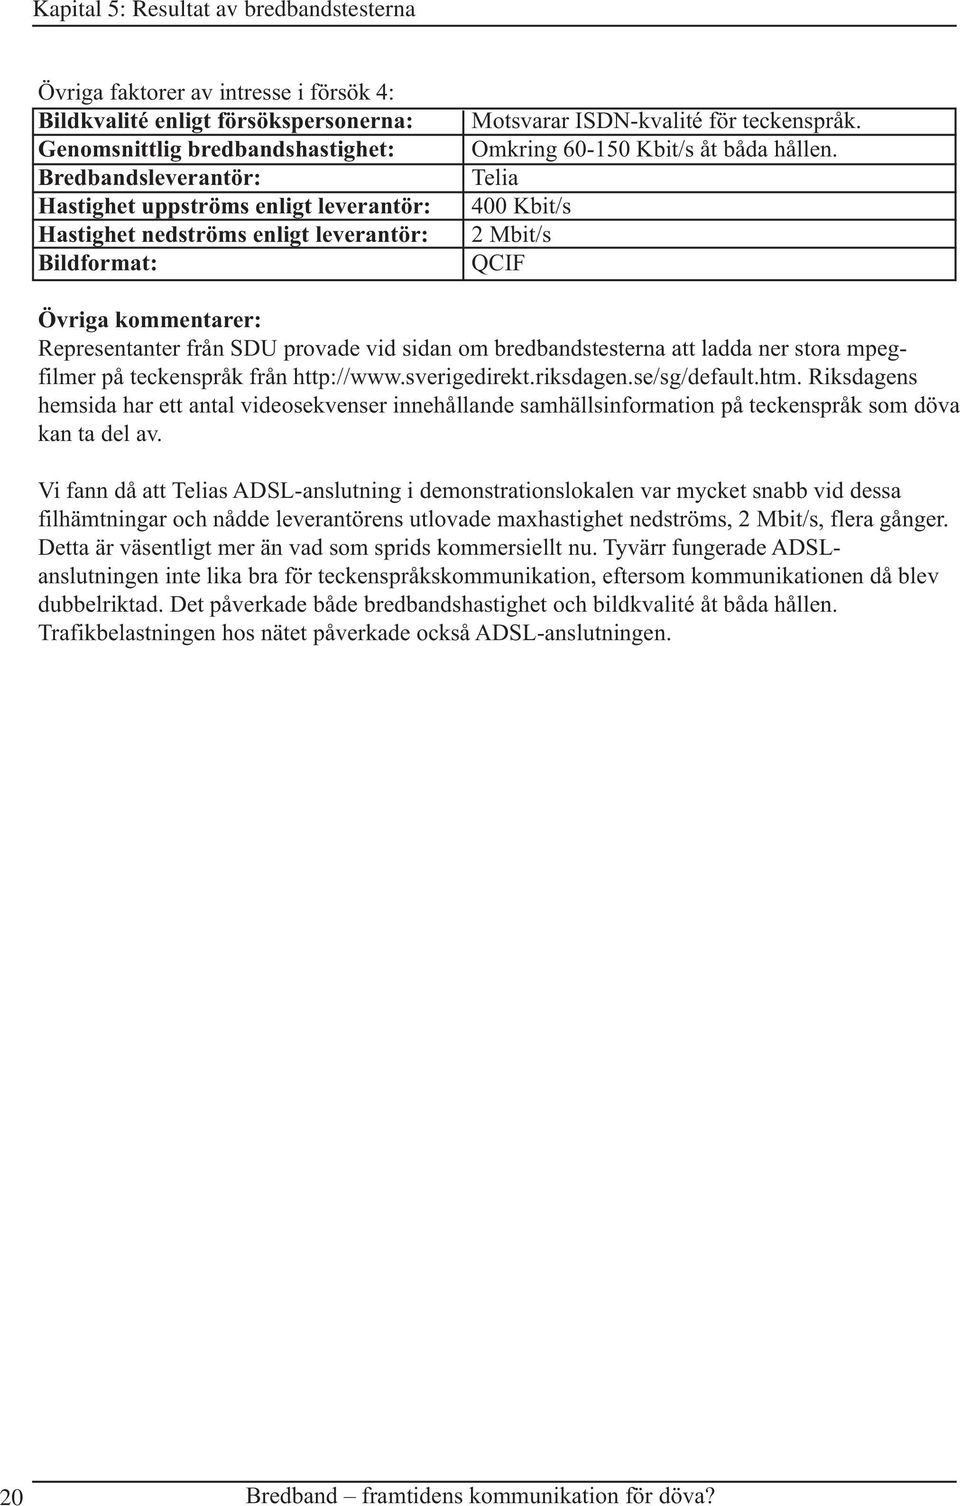 Telia 400 Kbit/s 2 Mbit/s QCIF Övriga kommentarer: Representanter från SDU provade vid sidan om bredbandstesterna att ladda ner stora mpegfilmer på teckenspråk från http://www.sverigedirekt.riksdagen.